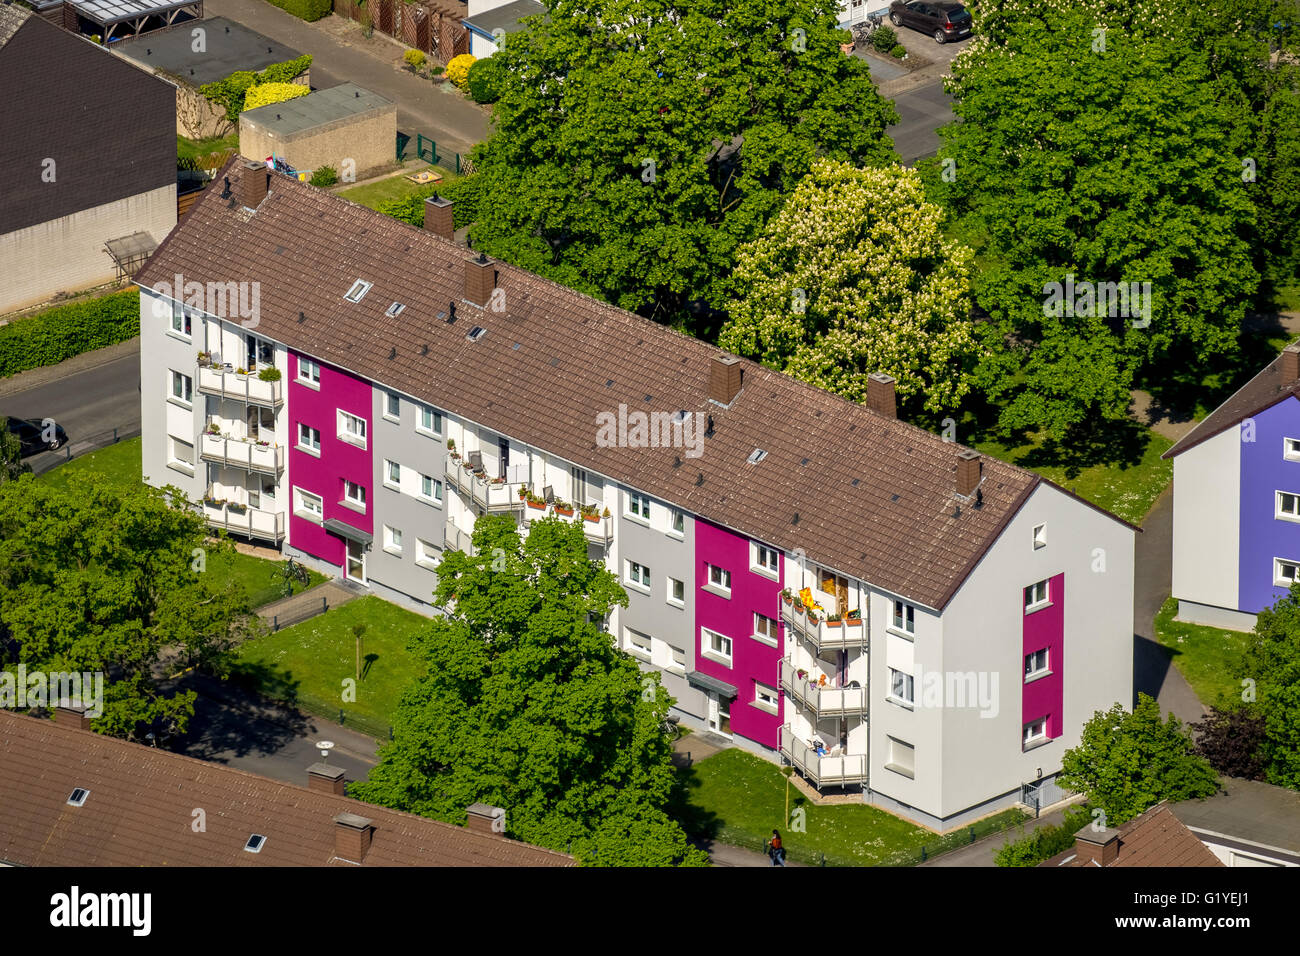 Luftbild, Mehrfamilienhäuser als Teilnehmer in einem Wettbewerb Fassade zu vermieten, Mehrfamilienhäuser, Hamm, Ruhrgebiet, Deutschland Stockfoto